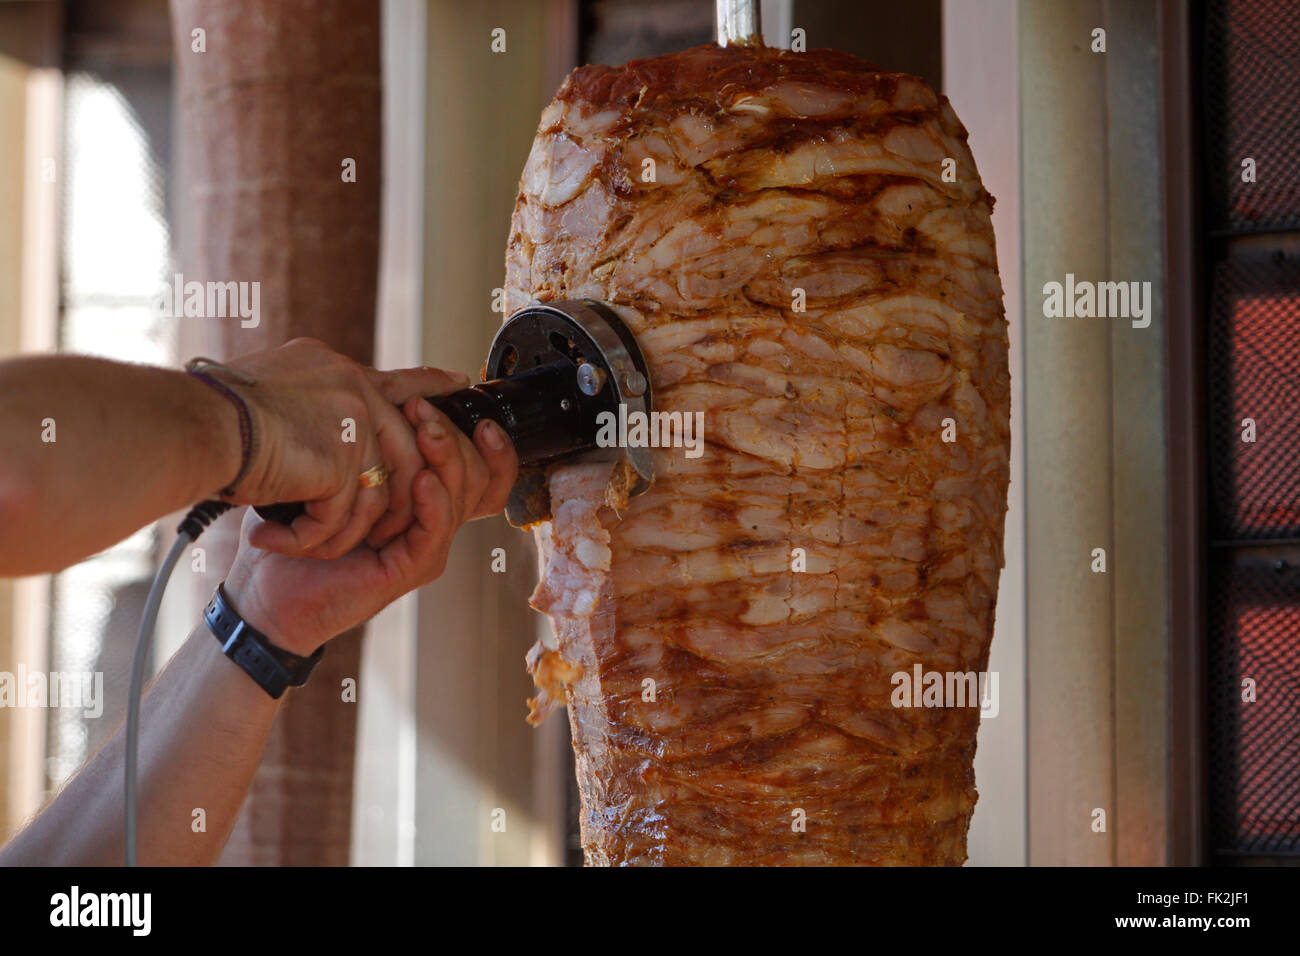 Doner, kebap, shawarma. Stock Photo